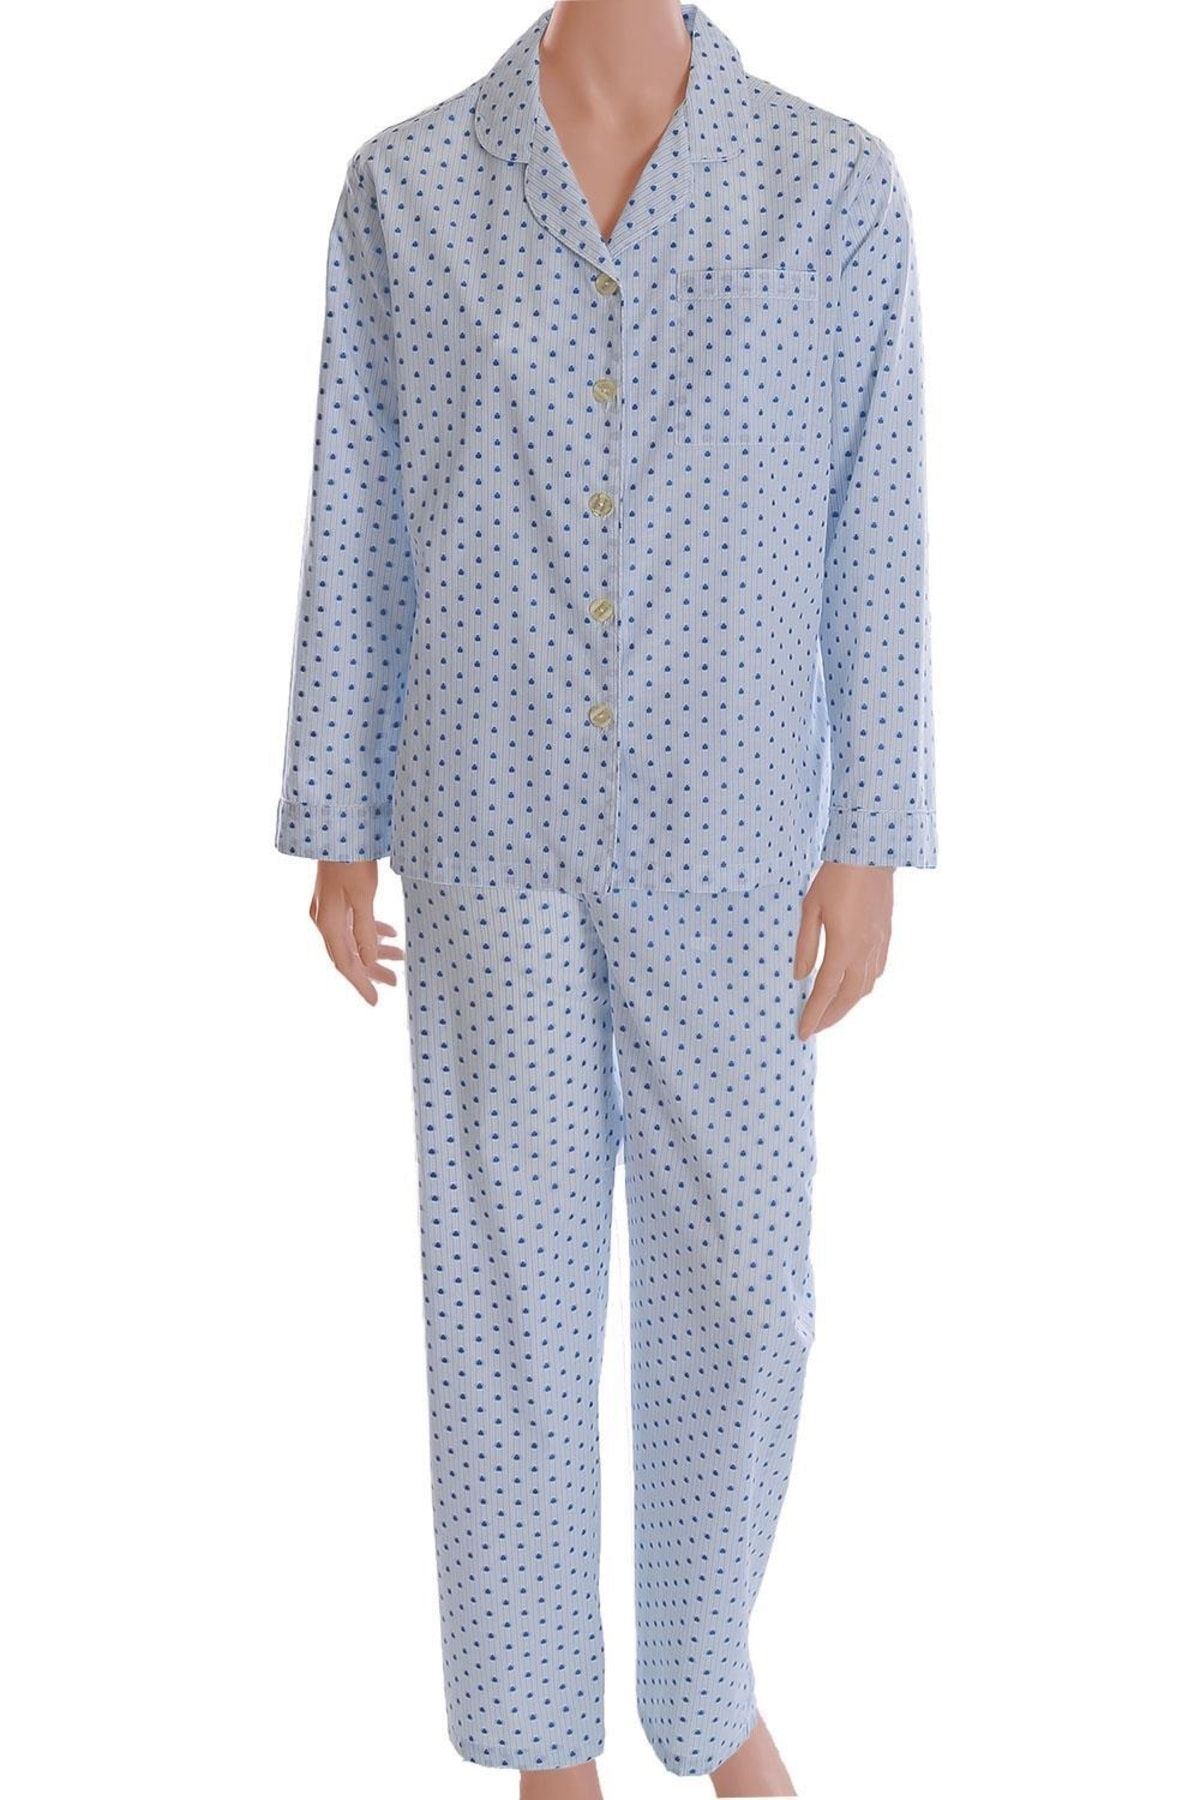 TheDon The Don Poplin Kadın Pijama Takımı Desen 33